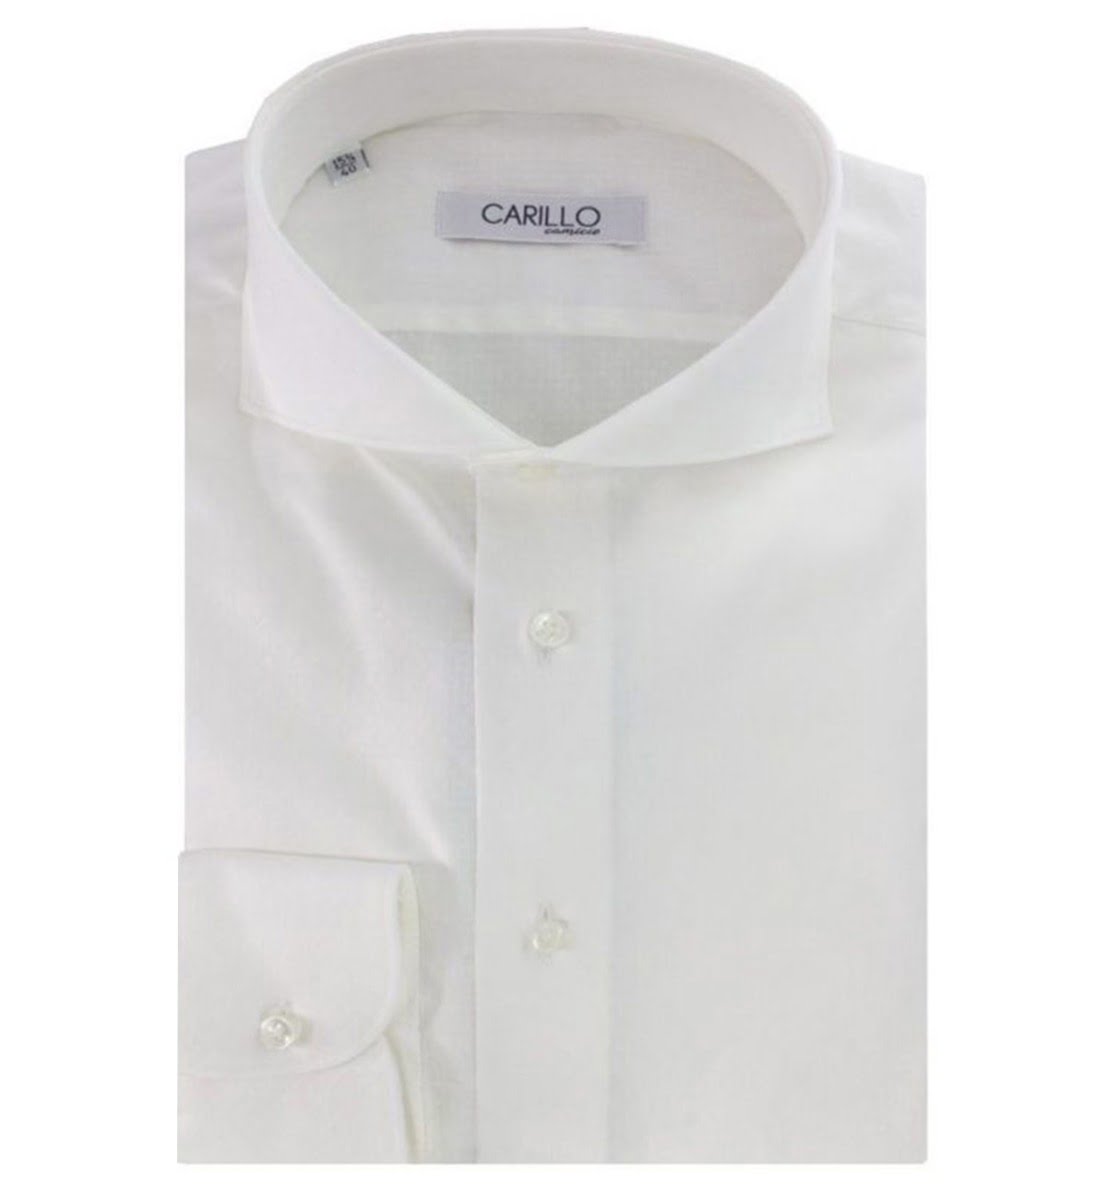 Camicia uomo slim bianca elegante con ricamo interno tono su tono